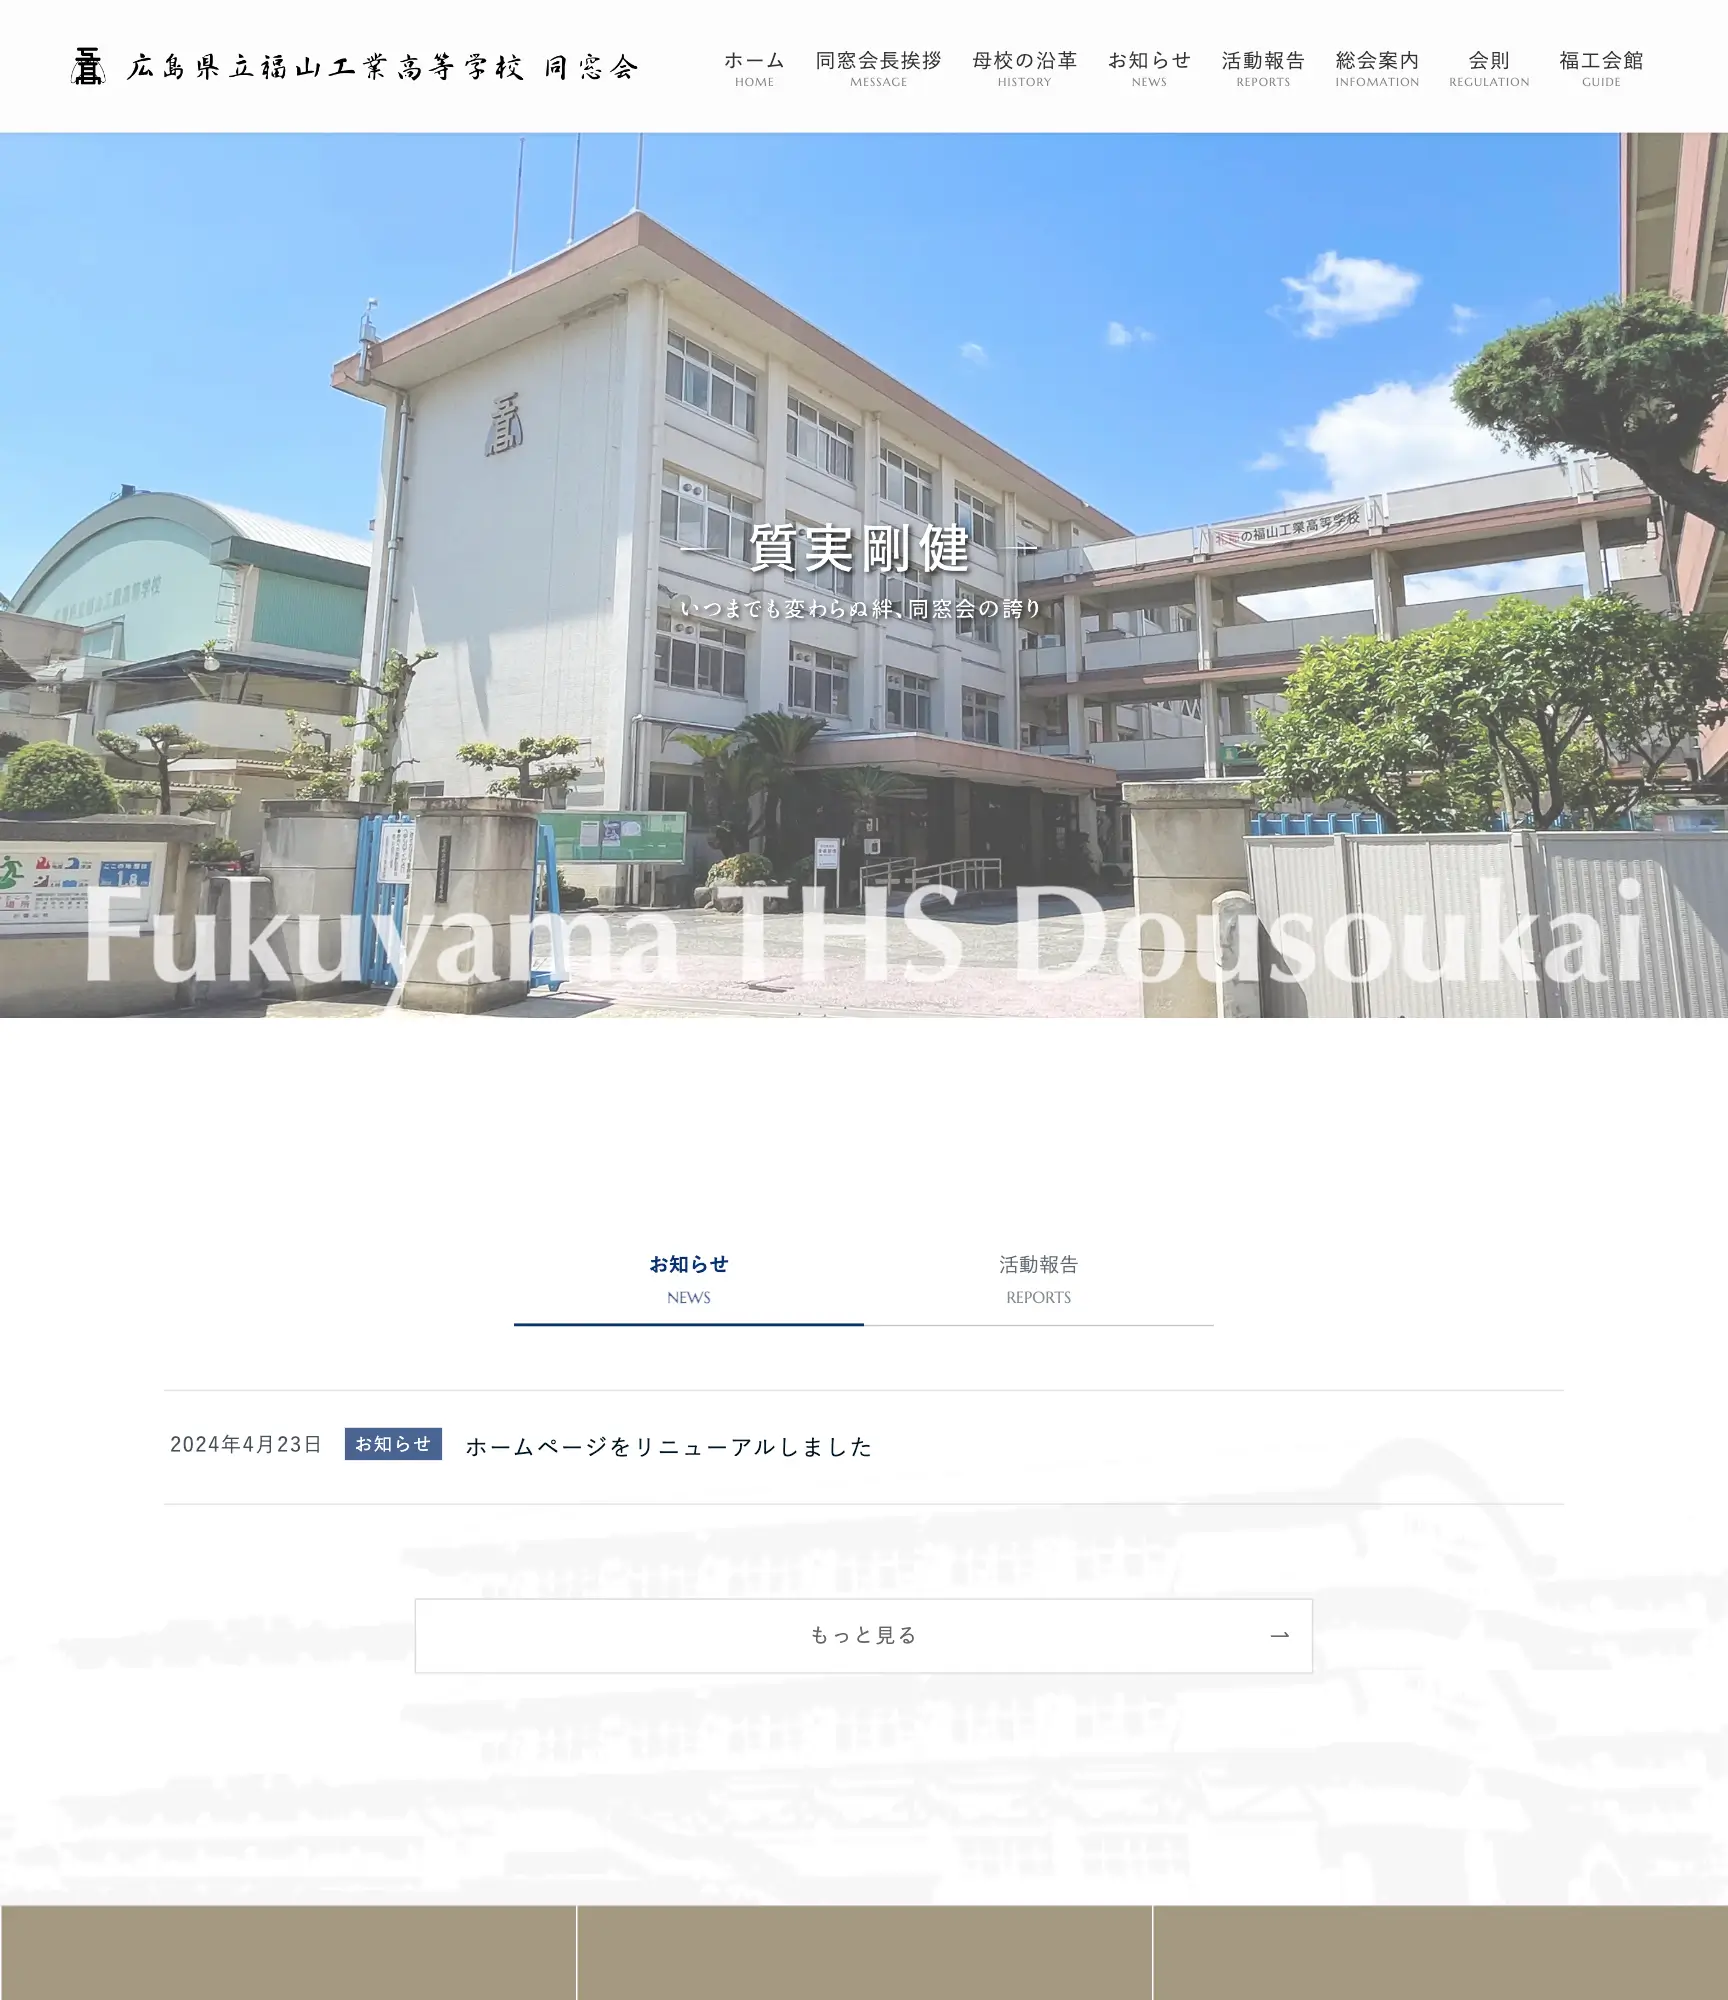 福山工業高等学校の正門から見た校舎がメインビジュアルのトップ画面。